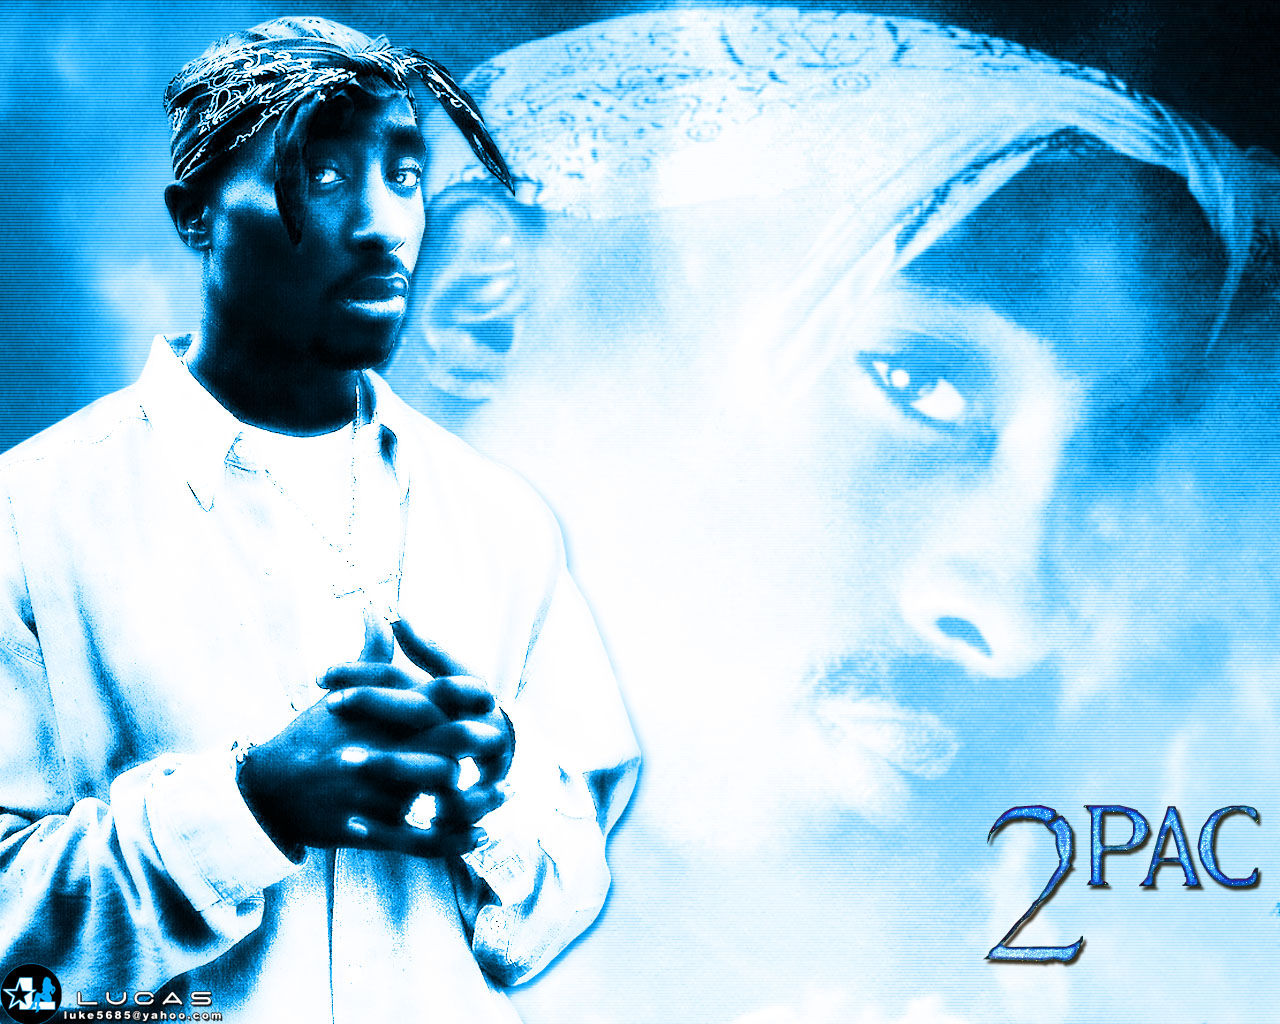 Tupac Shakur 2 pac